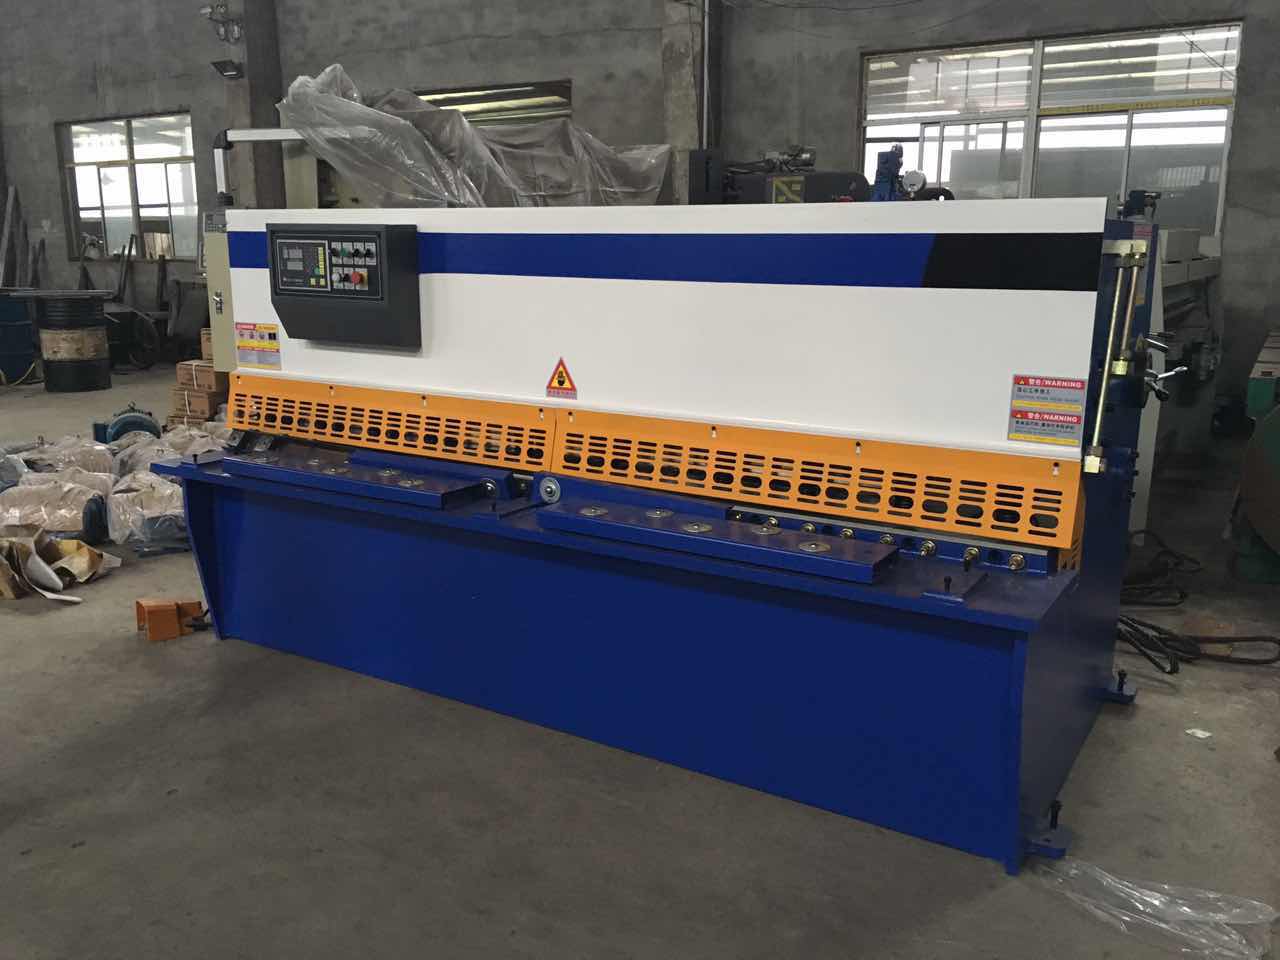 上海剪板机供应商丨剪板机生产厂家丨剪板机型号种类丨 剪板机图片样板